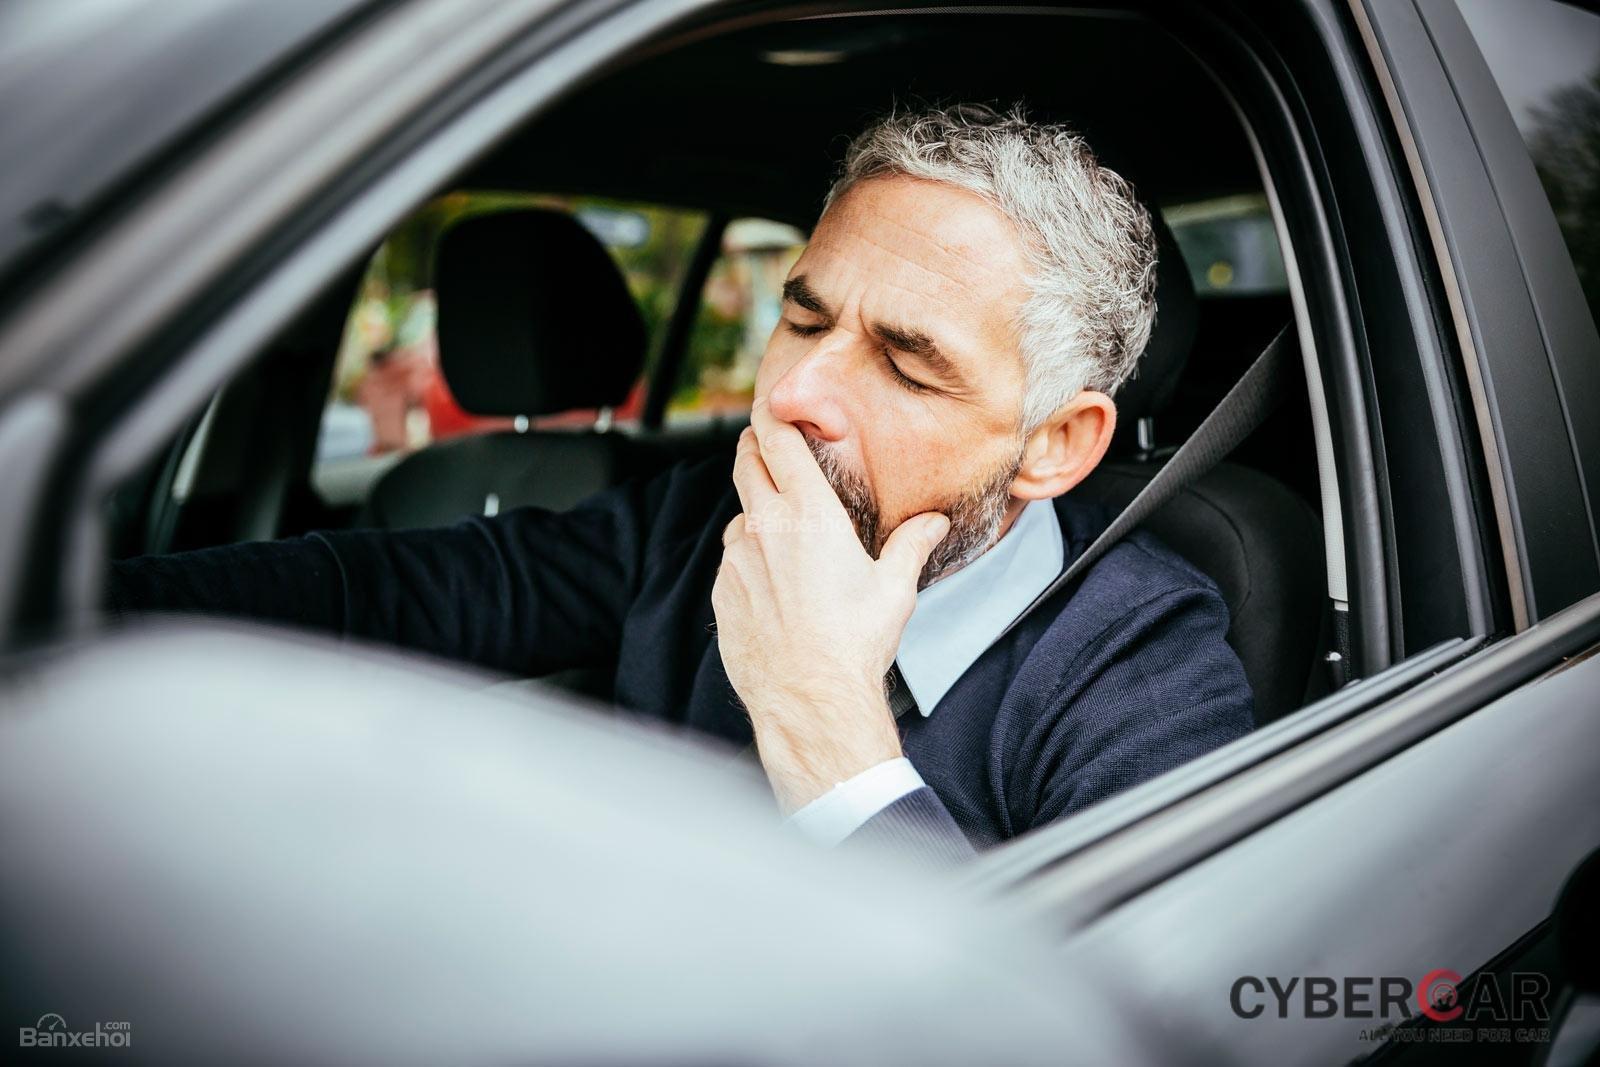 7 thói quen gây xao nhãng khi lái xe ô tô: Lái xe khi đang buồn ngủ z